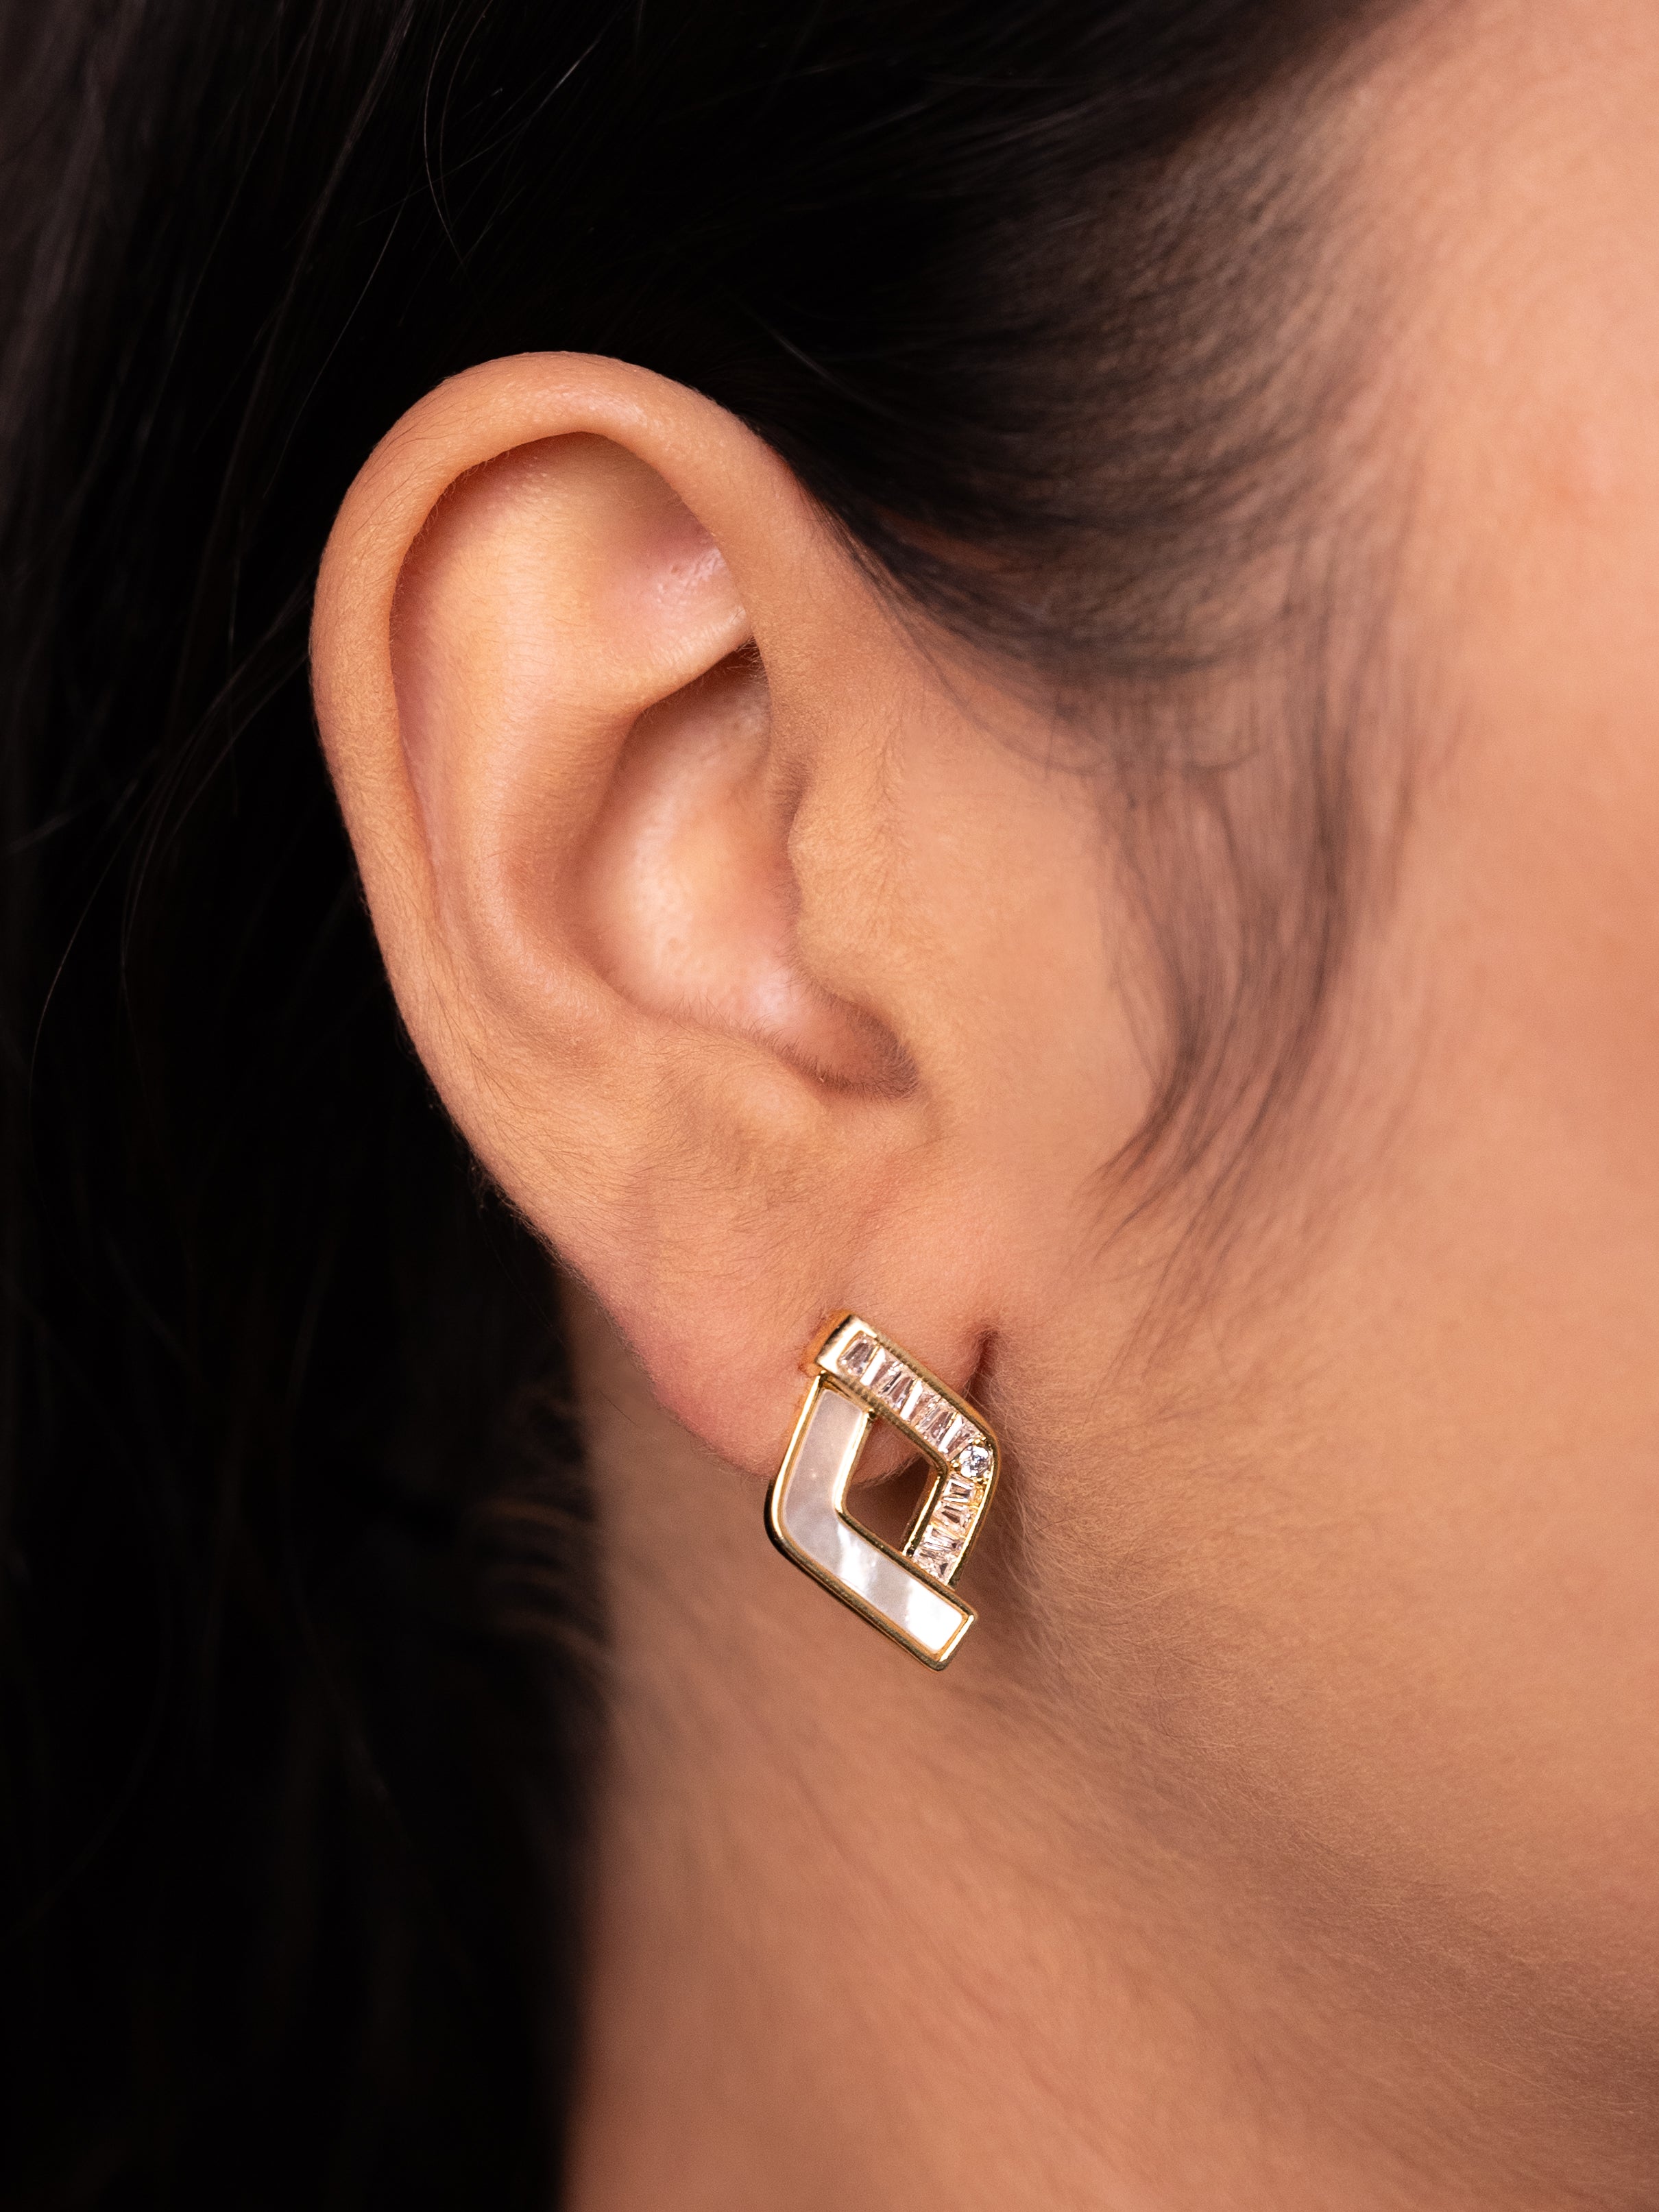 Minimalist MOP Stud Earrings | 18k Gold Plated